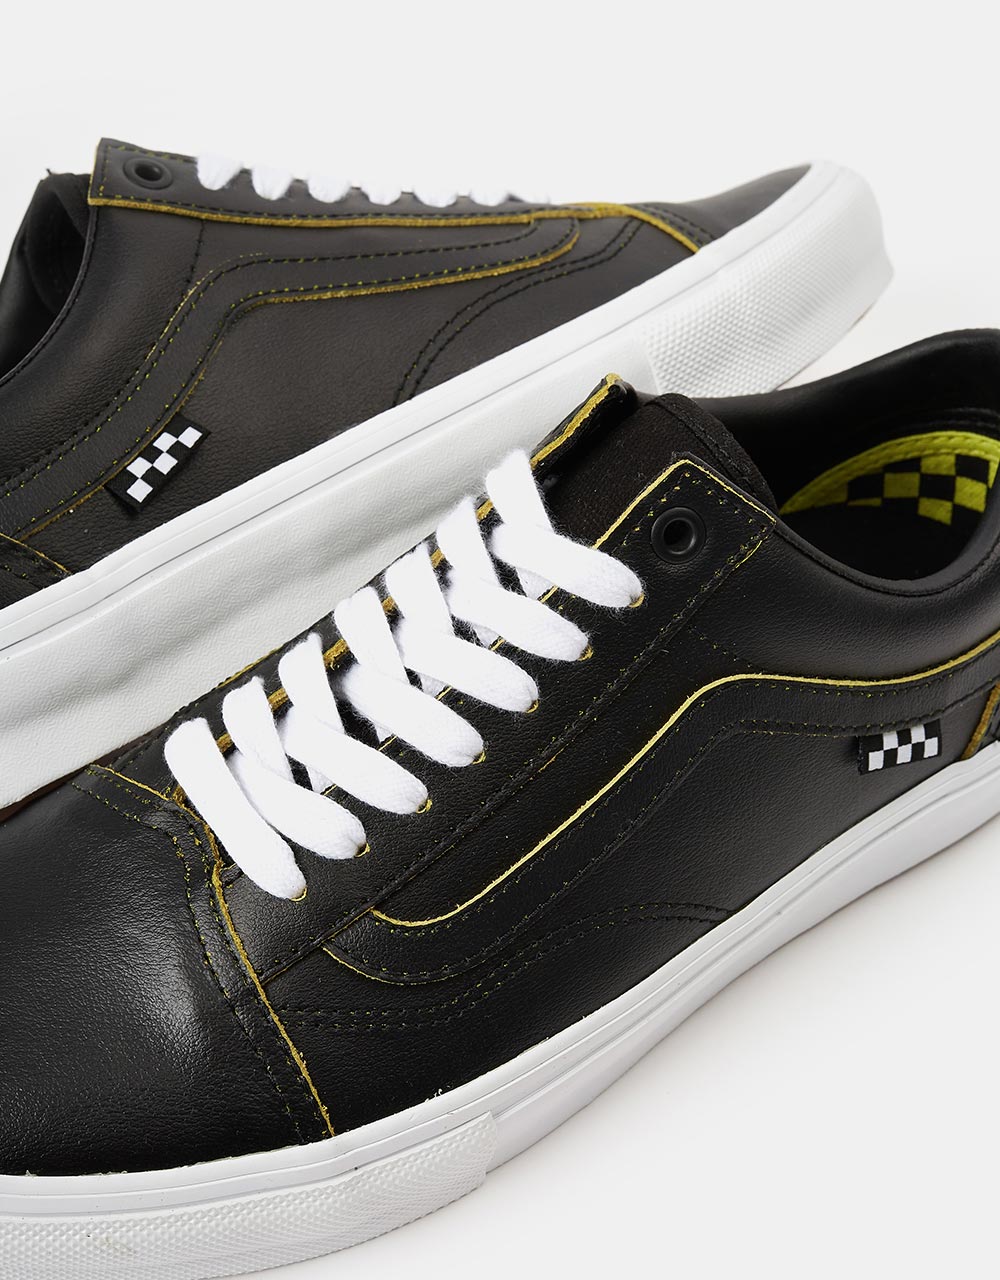 Vans Skate Old Skool R1 UK Exclusive Skate Shoes - (Wearaway) Black/True White